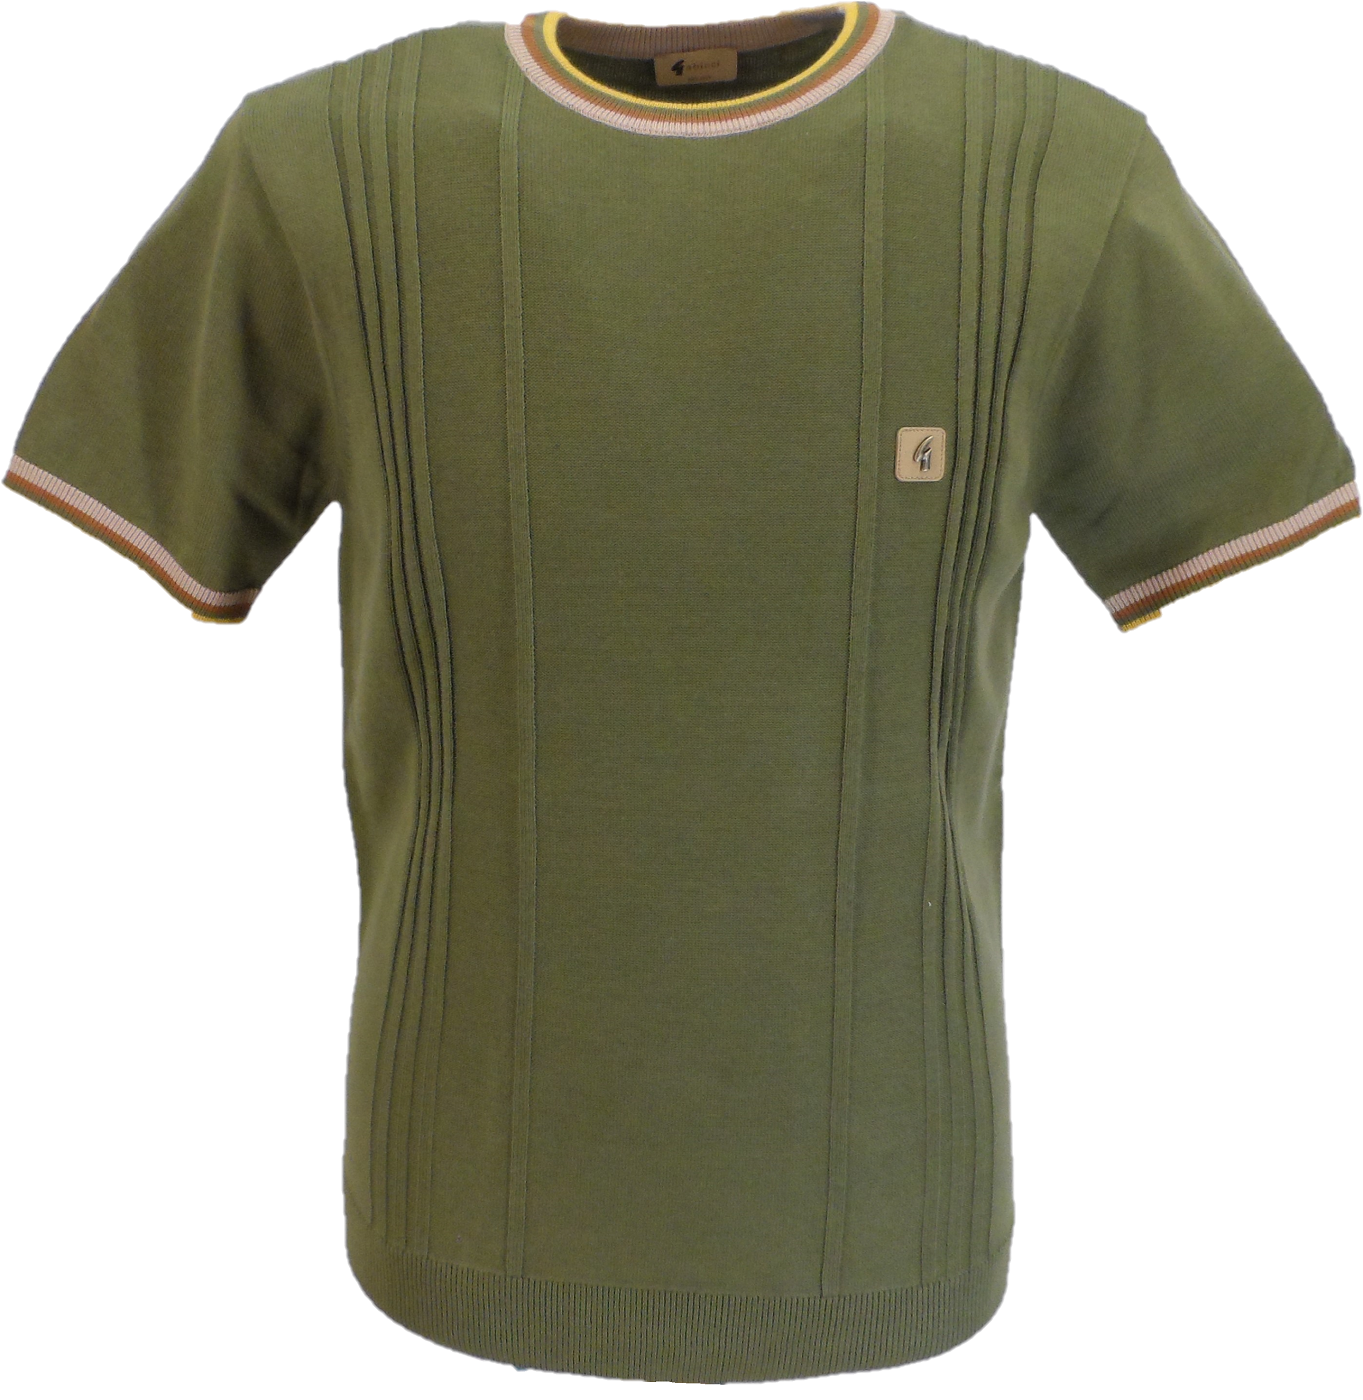 Gabicci Vintage herre trøje i grangrøn med turtle neck